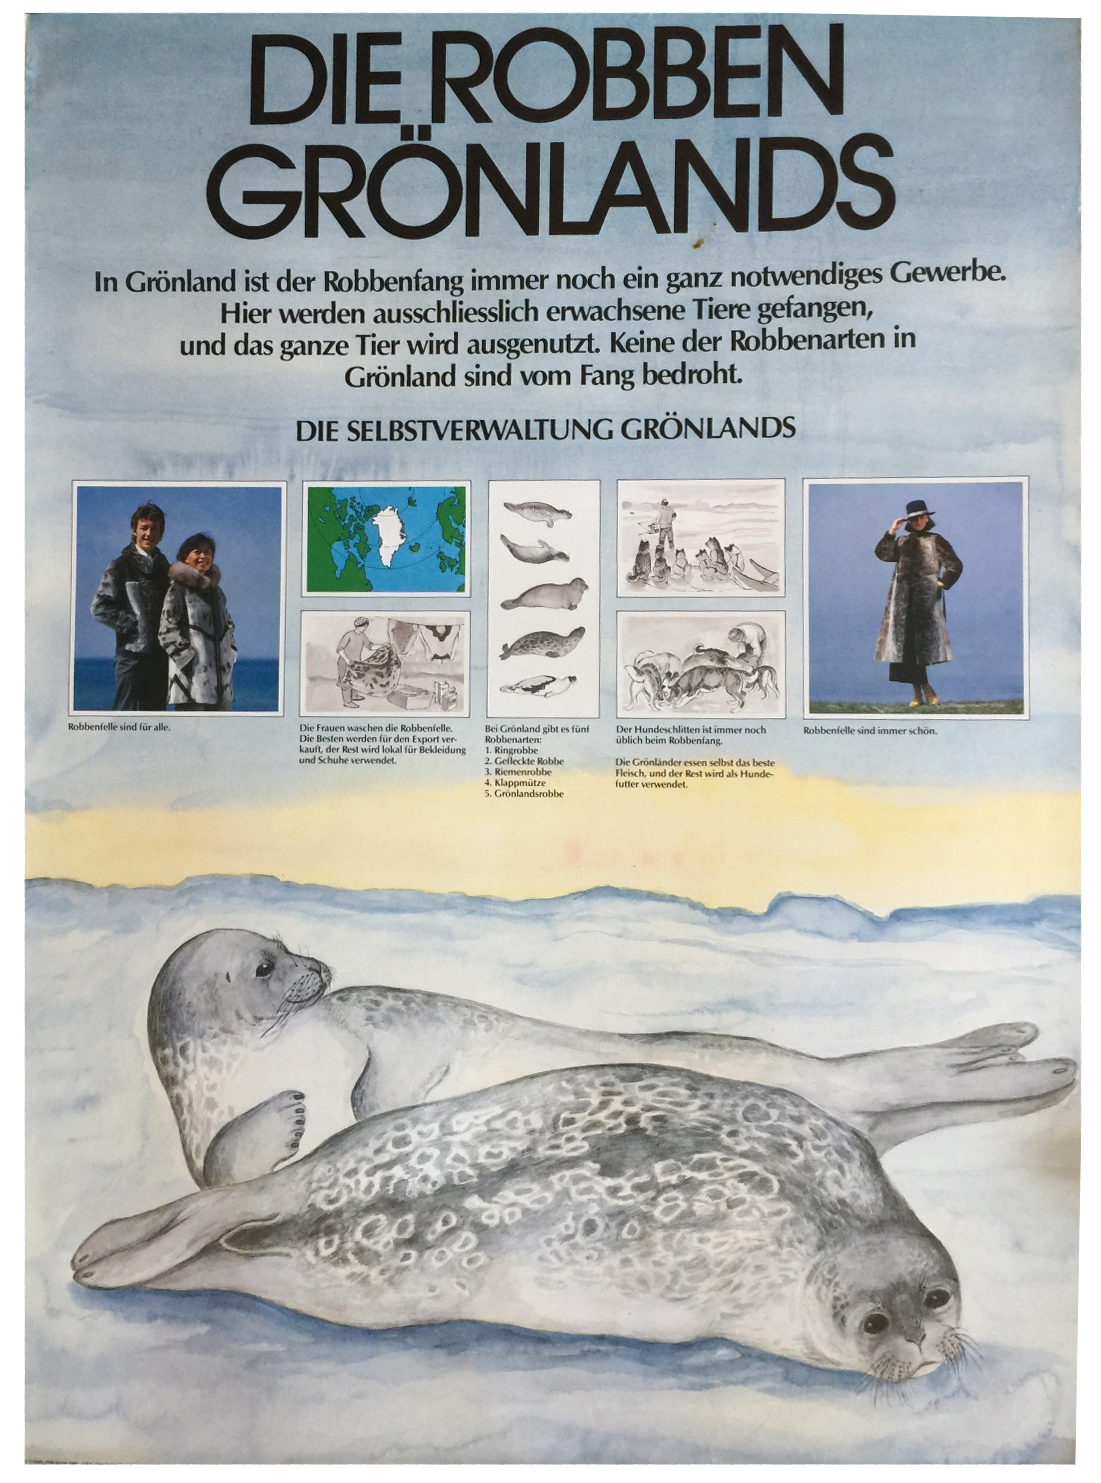 Robben Grönlands (Bild: Tusarviilik Nuuk, Grönländische Selbstverwaltung 1986)